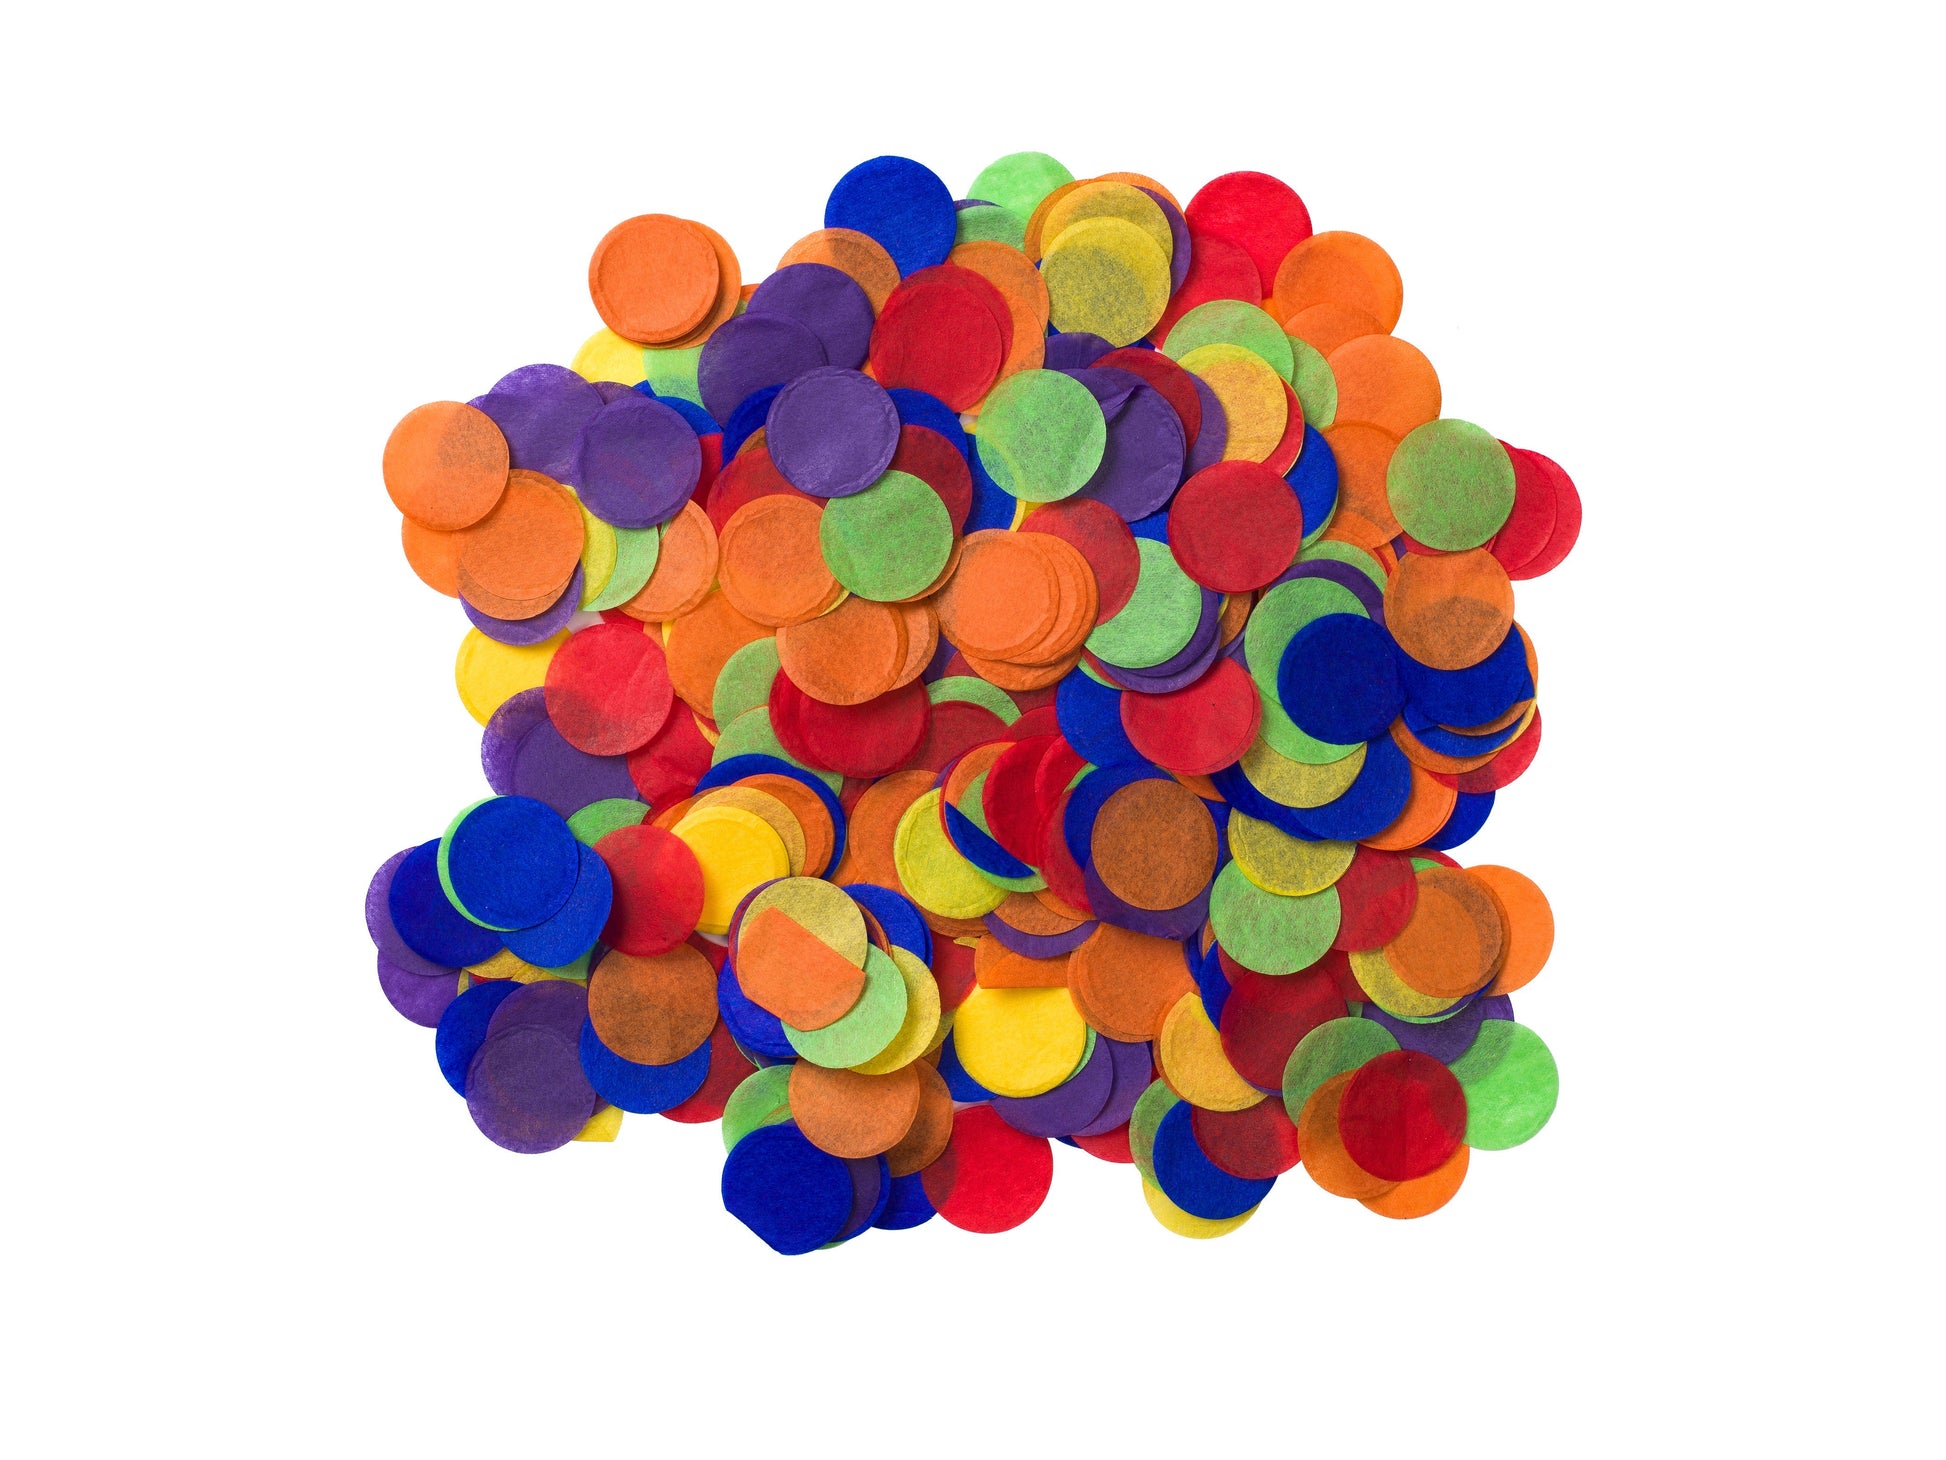 Paper confetti,30G
Dia：2cm
Material: Tissue paper
6 colors assorted - Engångsartiklar, Student, Jul, Nyår, Fest, Kalas